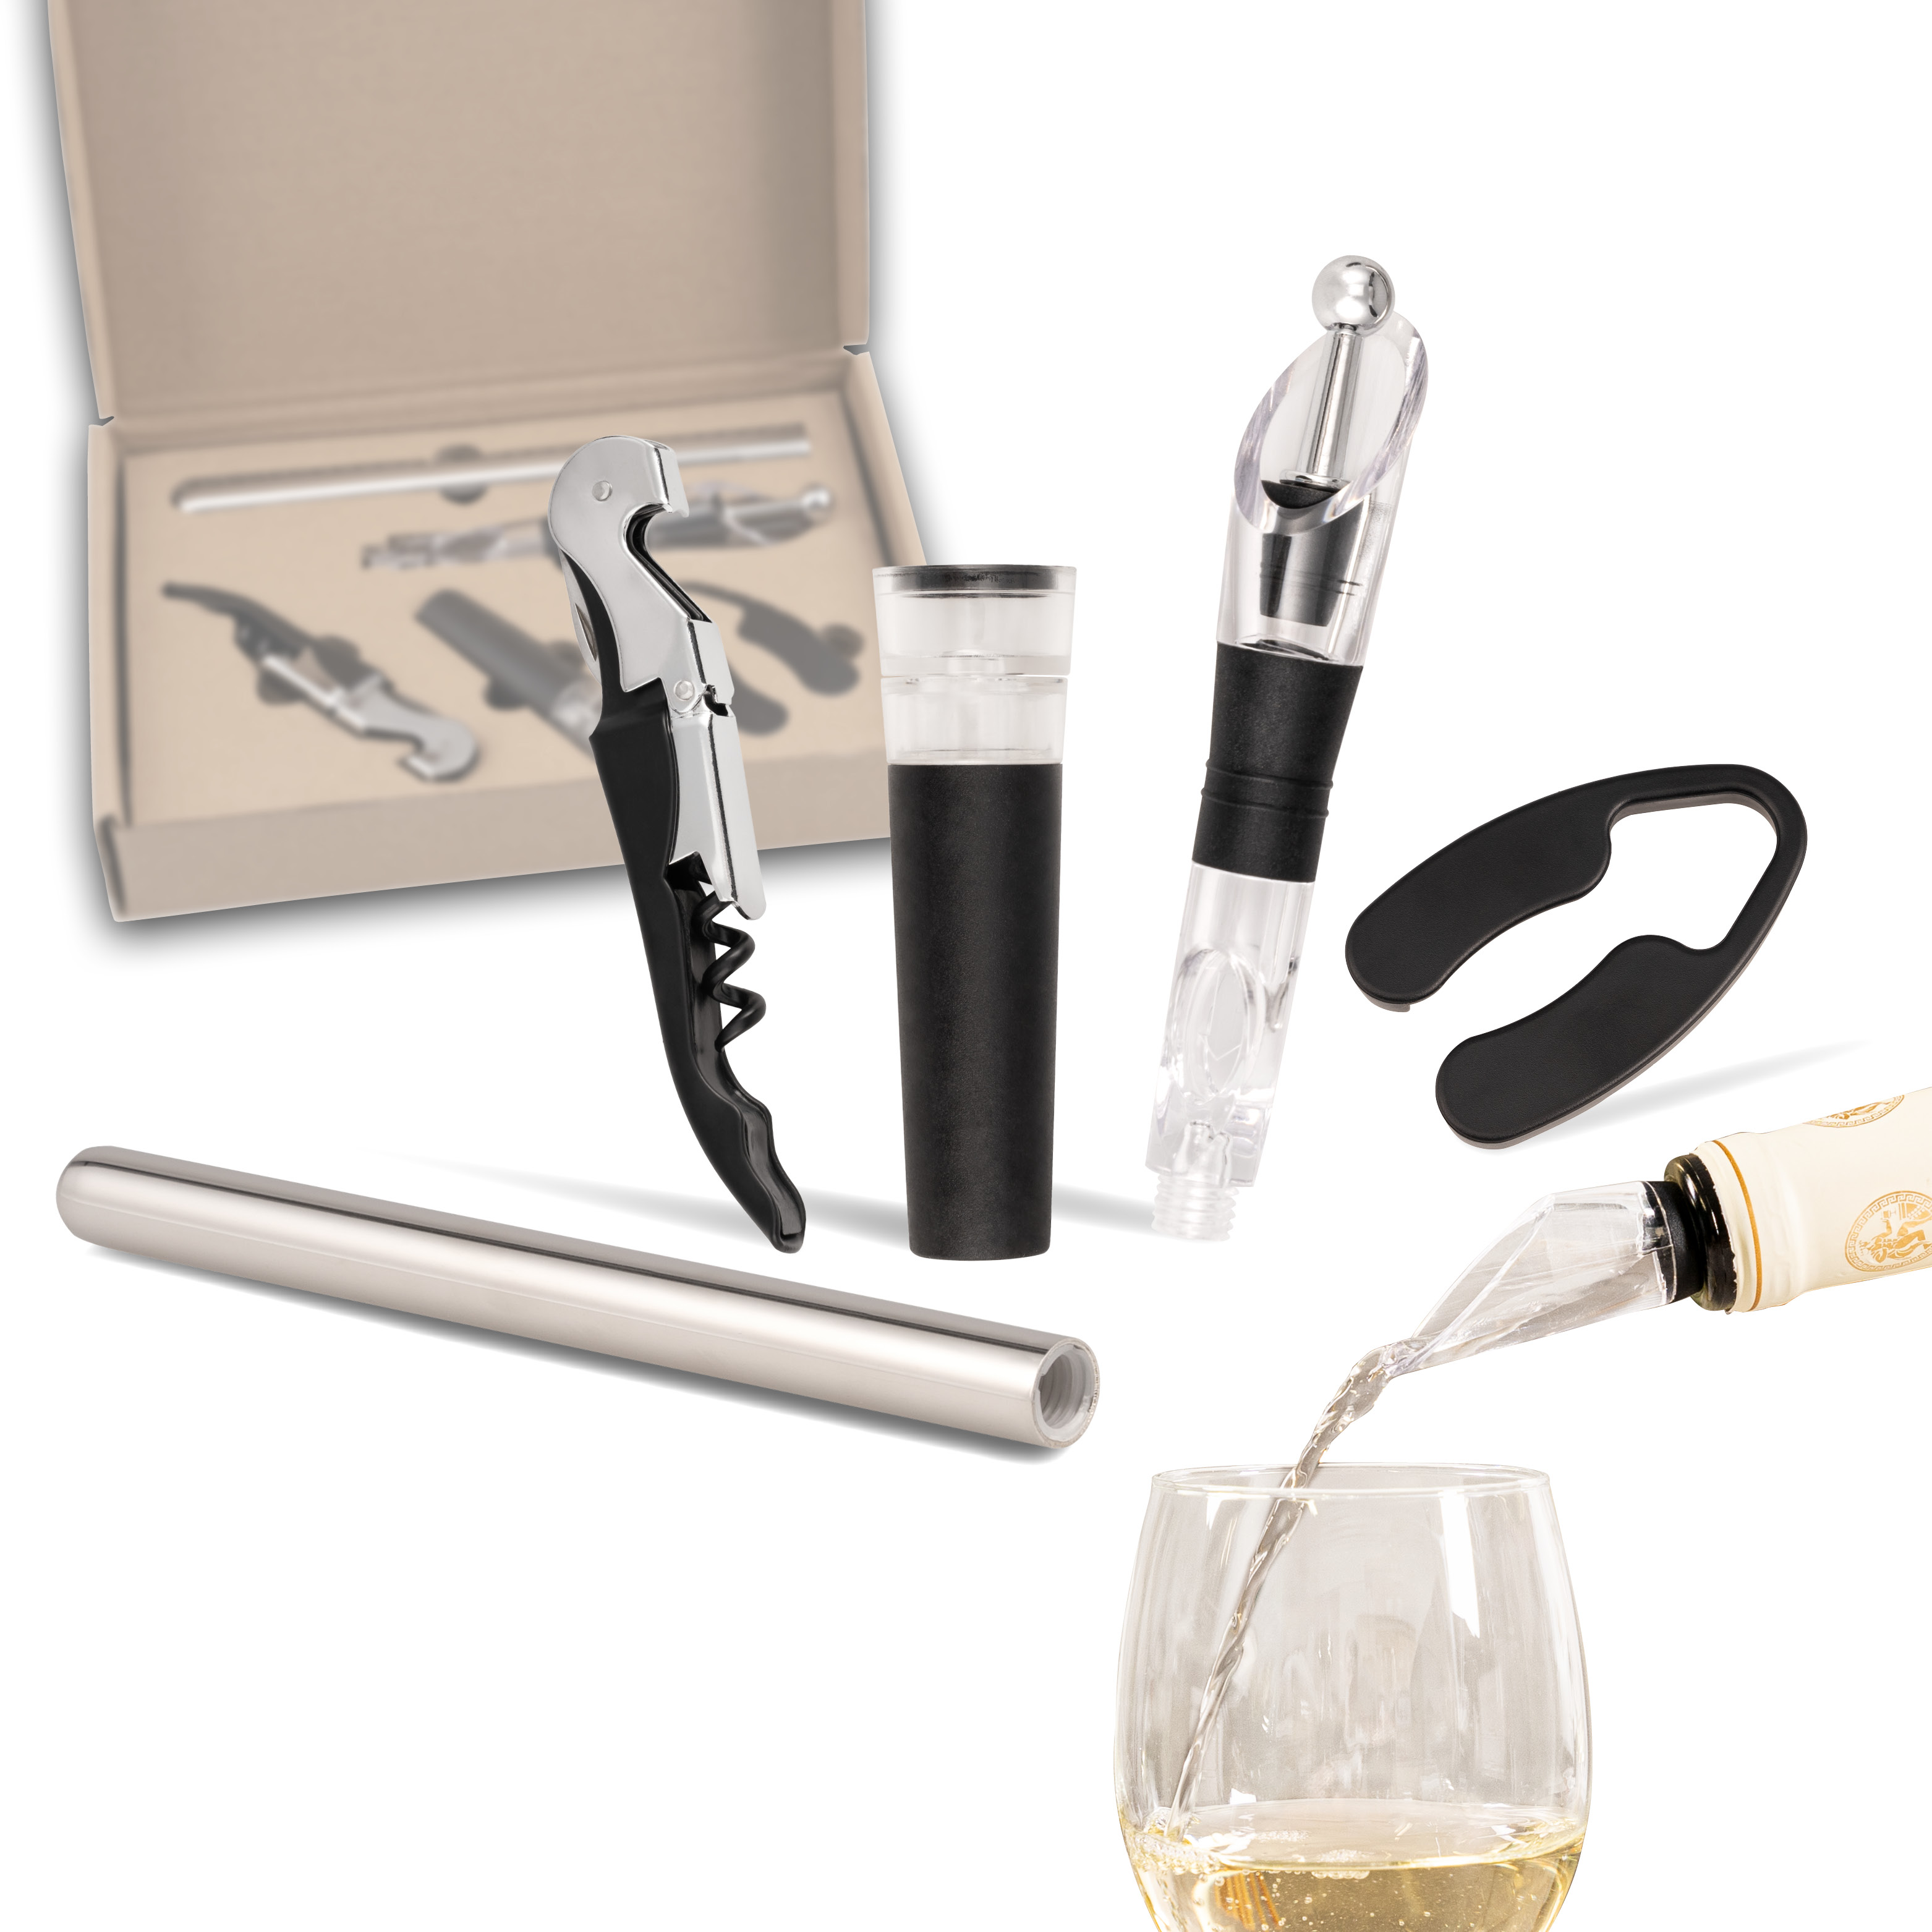 Wein-Set 5-tlg, inkl. Kellnermesser, Vakuumverschluss, Ausgießer mit Verschluss, Kühlstab und Folien